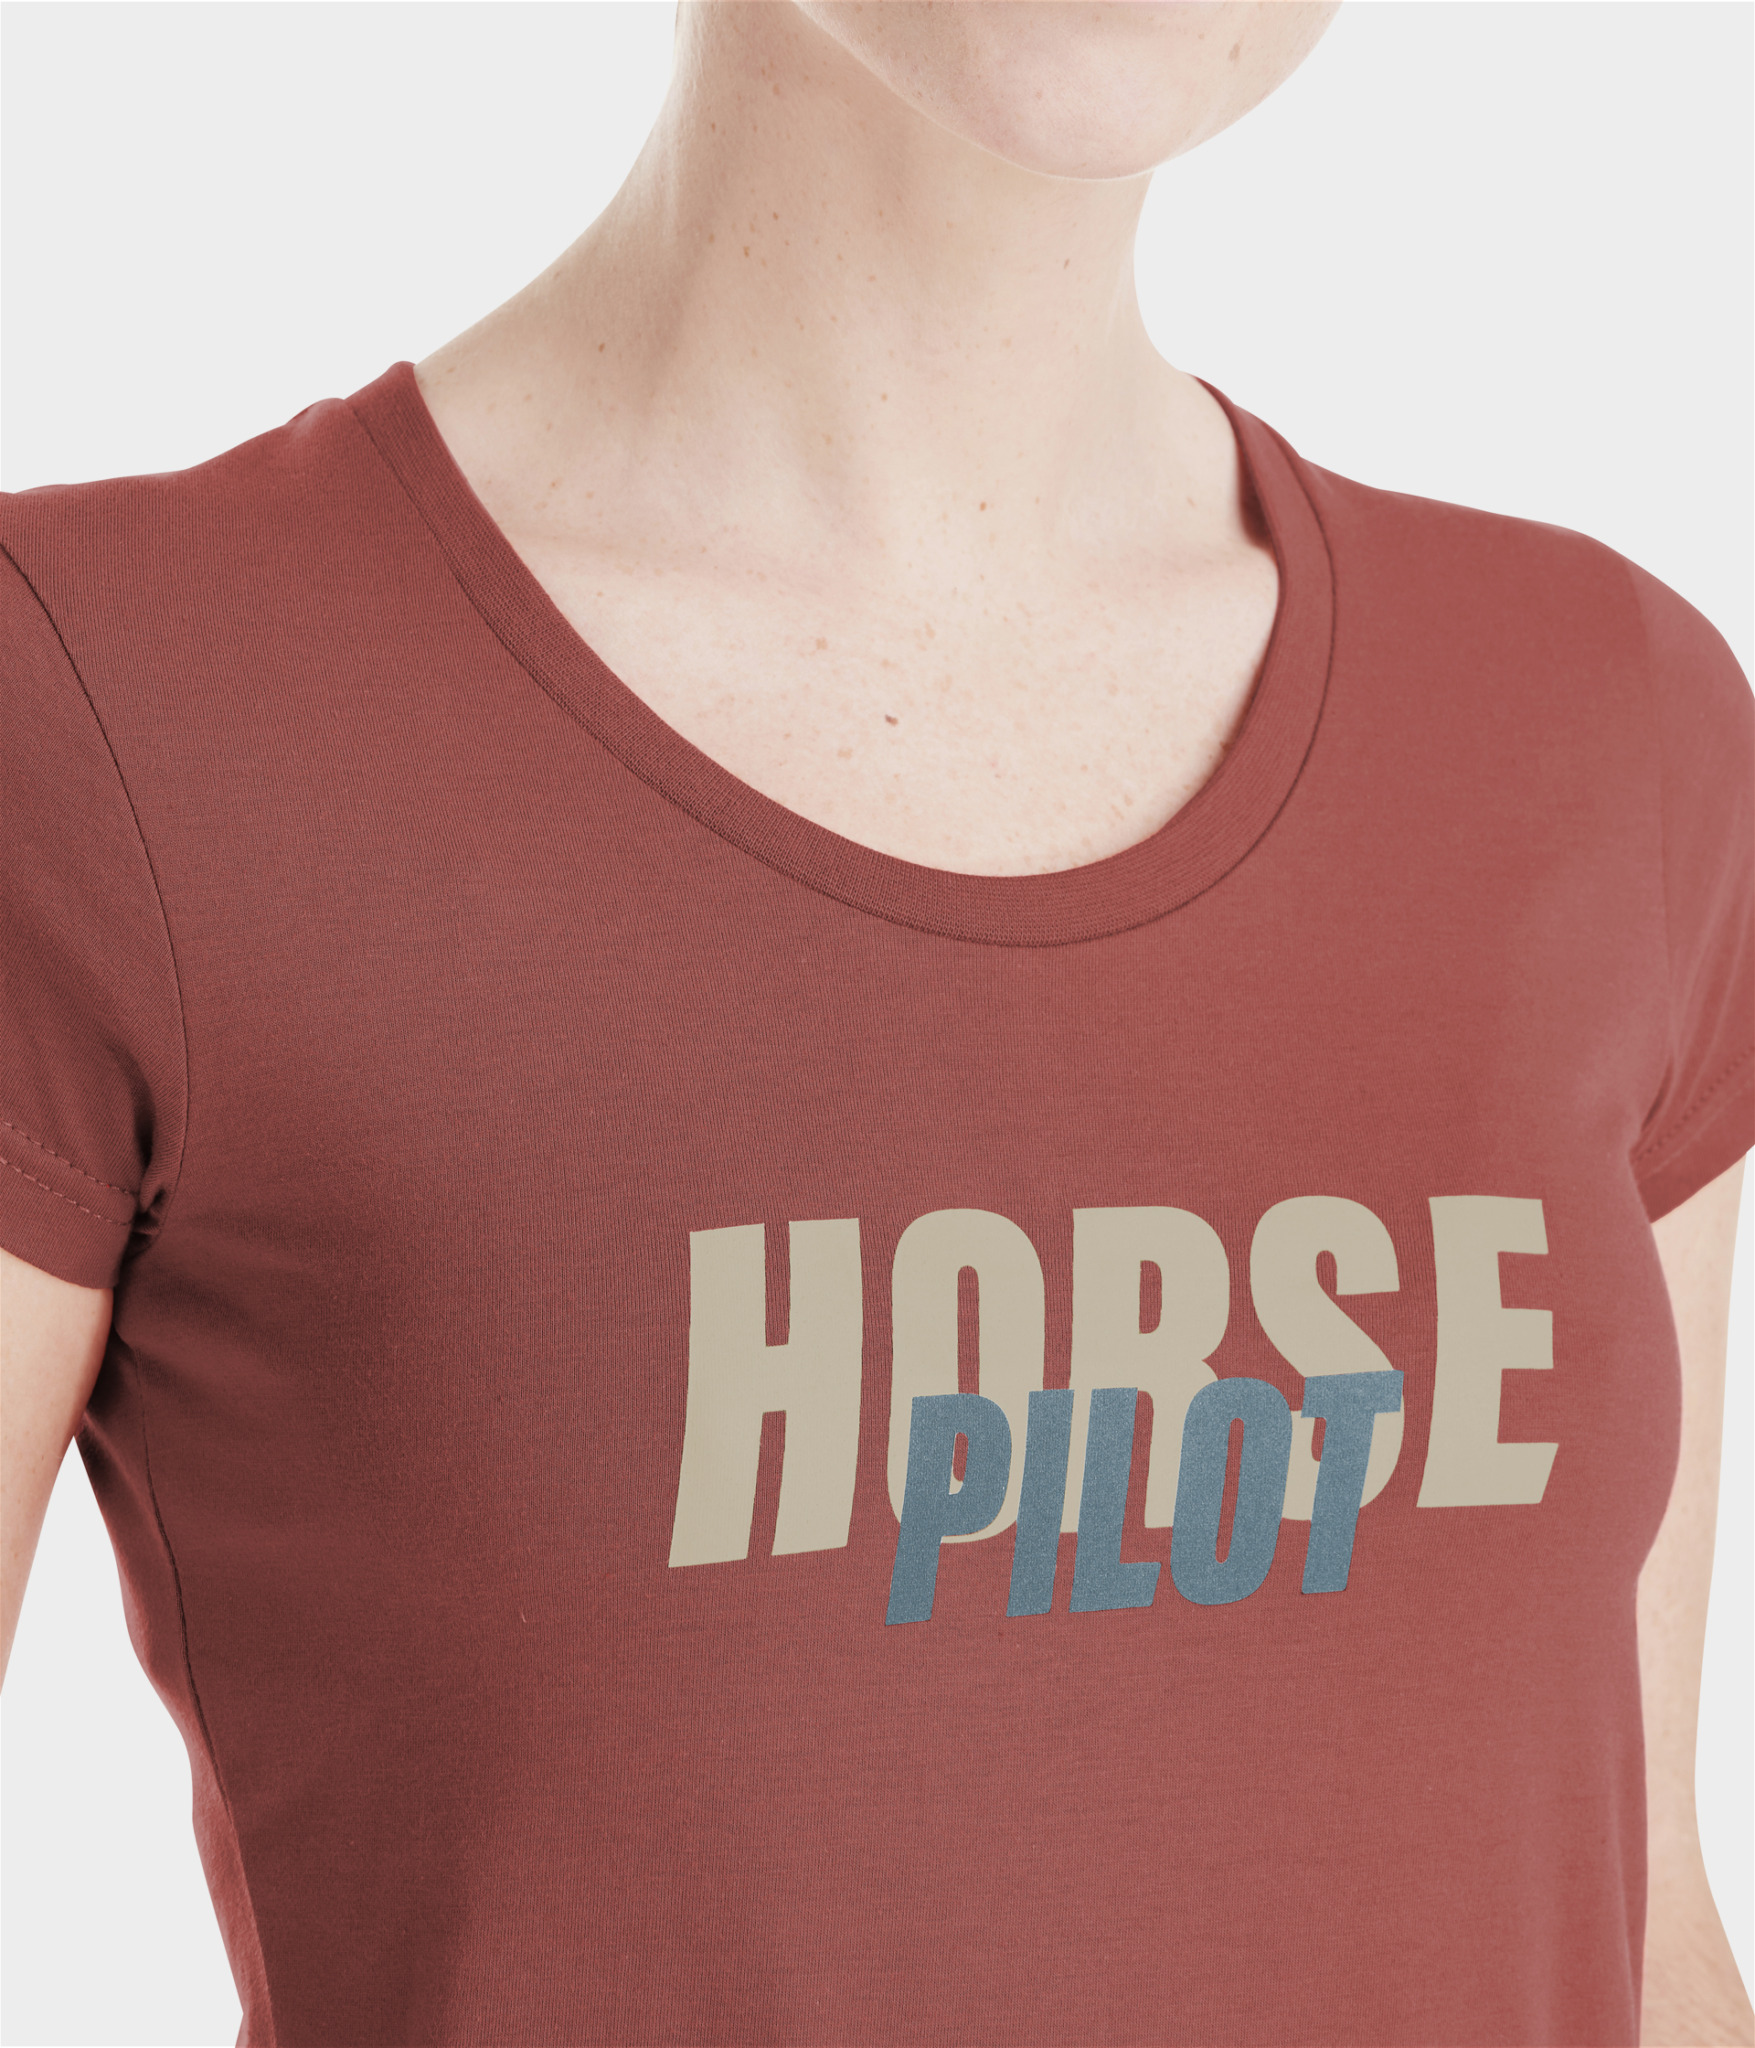 tee-shirt d'équitation pour femme de marque horse pilot modèle team terracota